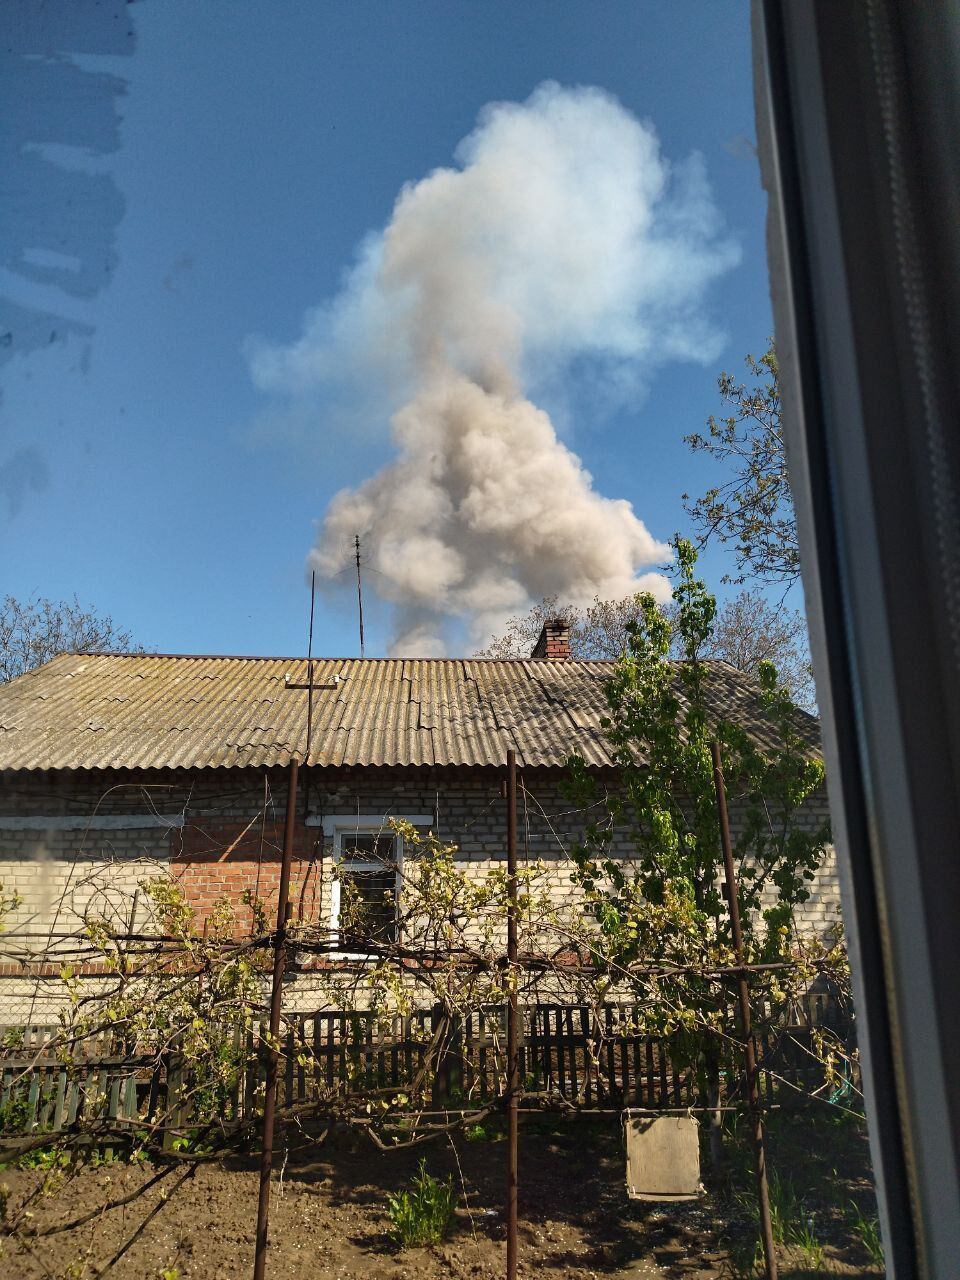 Разбили стоянку вертолетов РФ: во временно оккупированном Моспино на Донбассе раздался взрыв. Фото